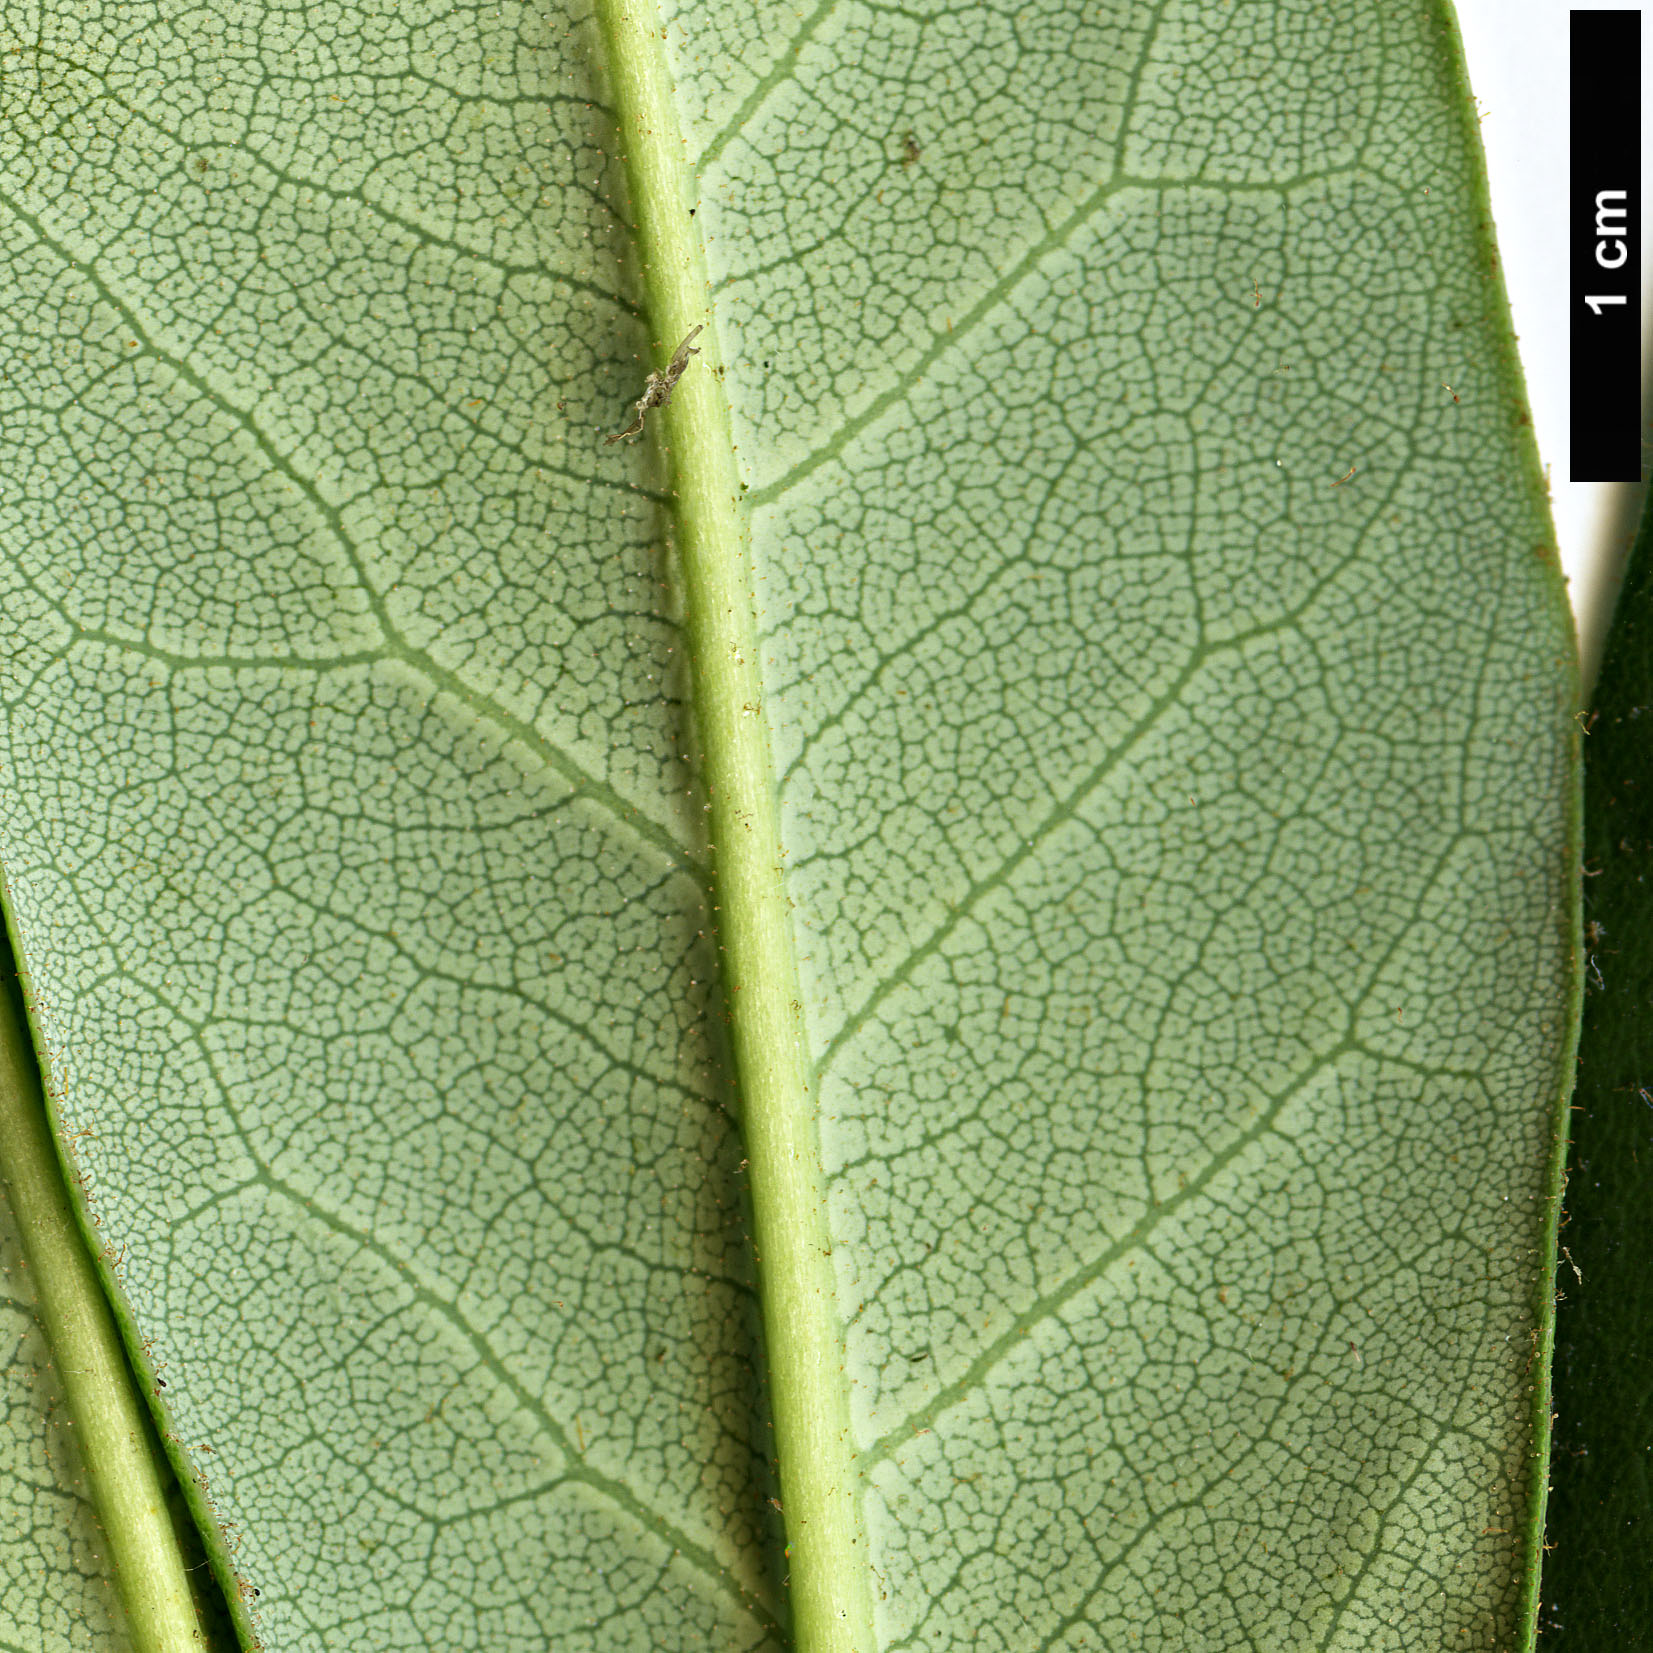 High resolution image: Family: Ericaceae - Genus: Rhododendron - Taxon: glanduliferum